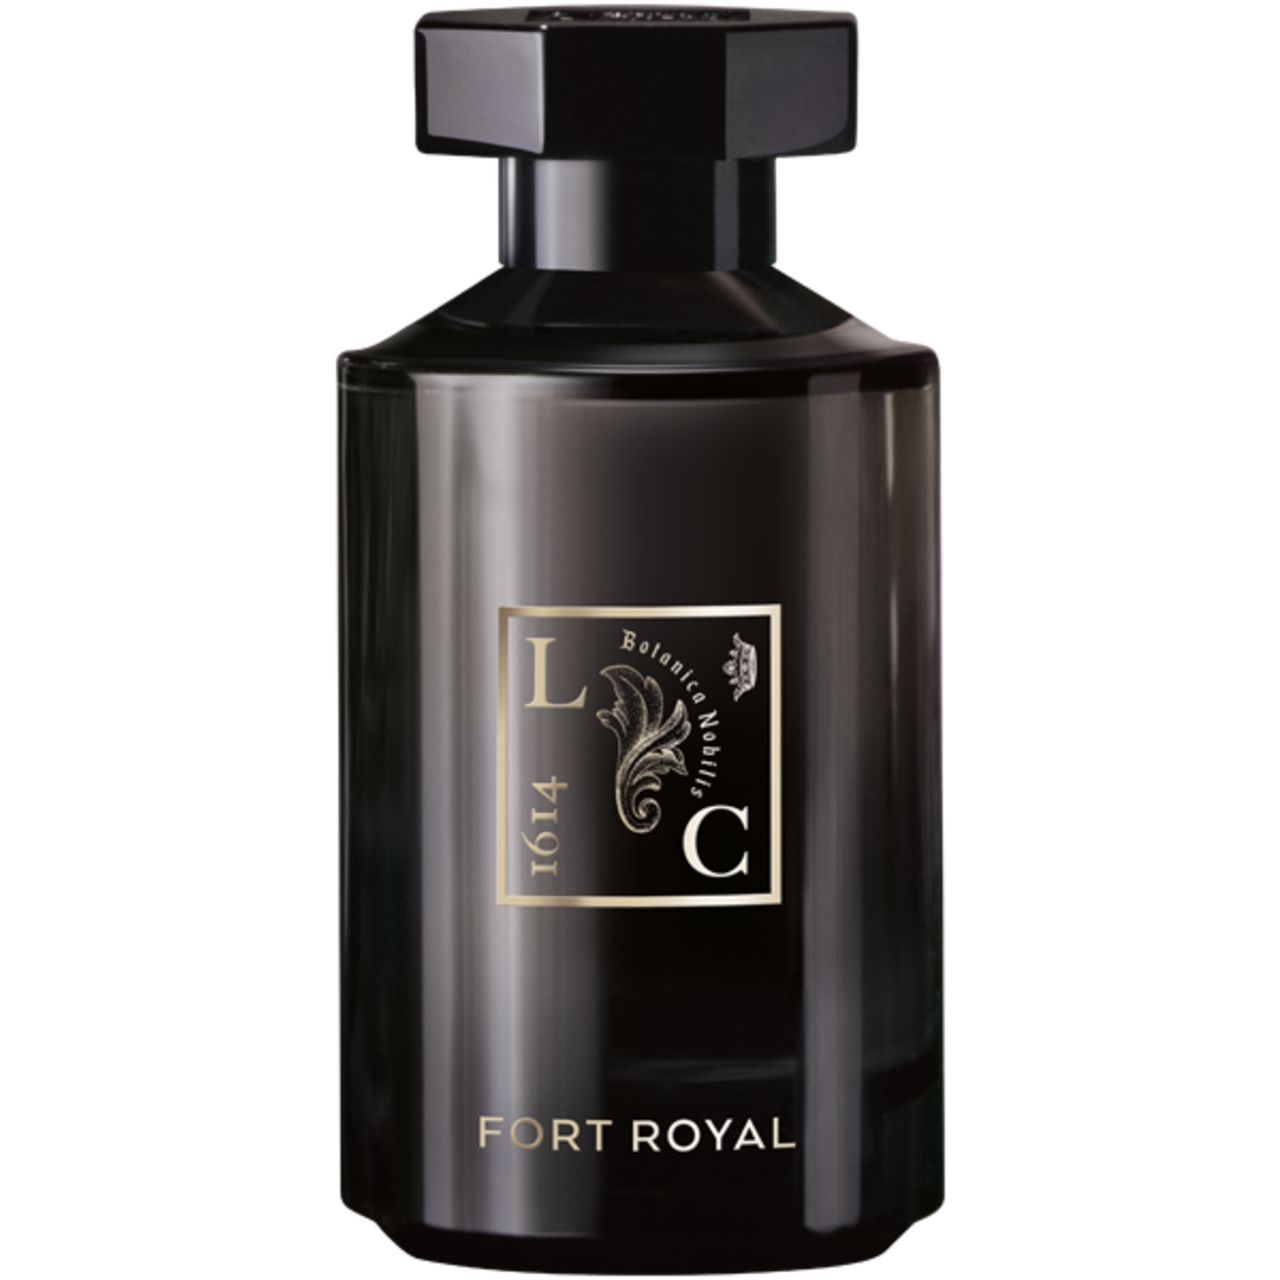 Remarquable Fort Royal Eau de Parfum 100 ml